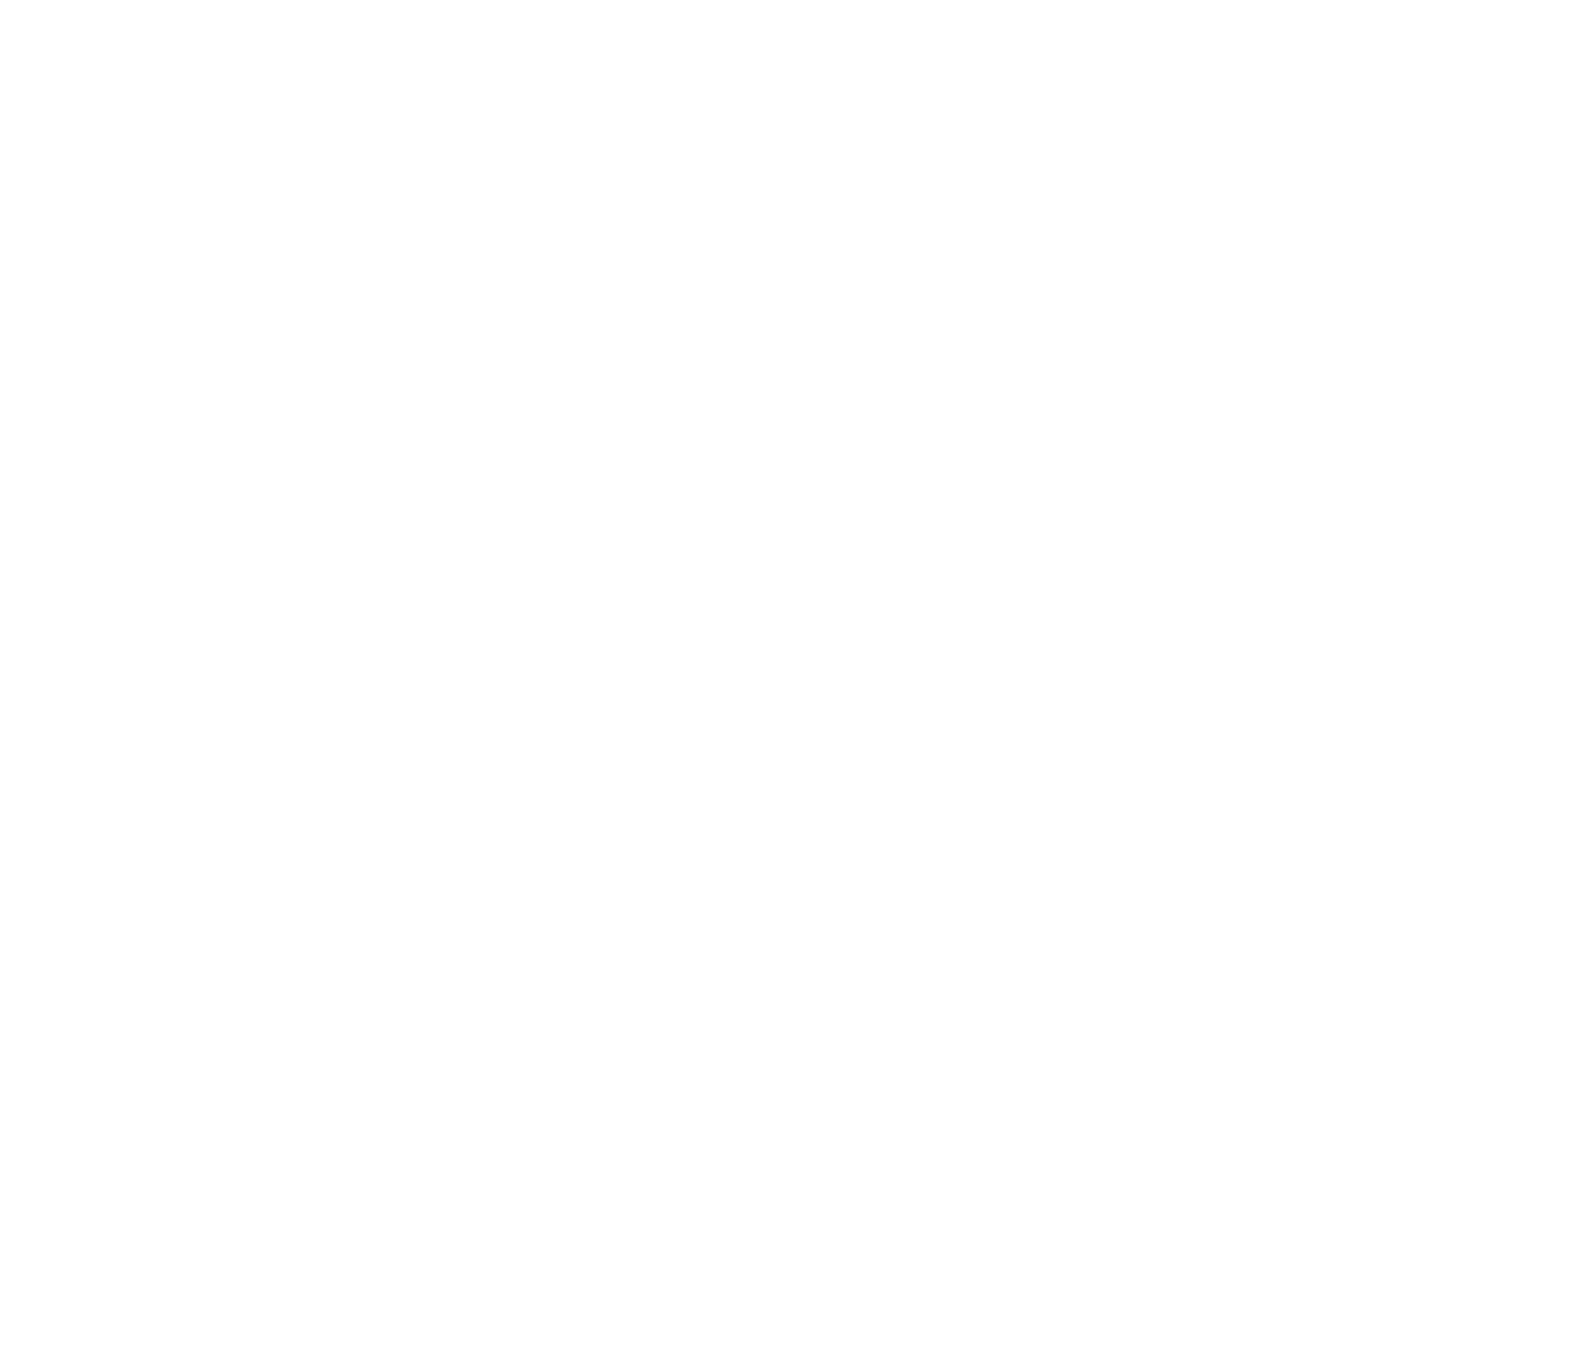 Gulf Energy Development Public Company logo pour fonds sombres (PNG transparent)